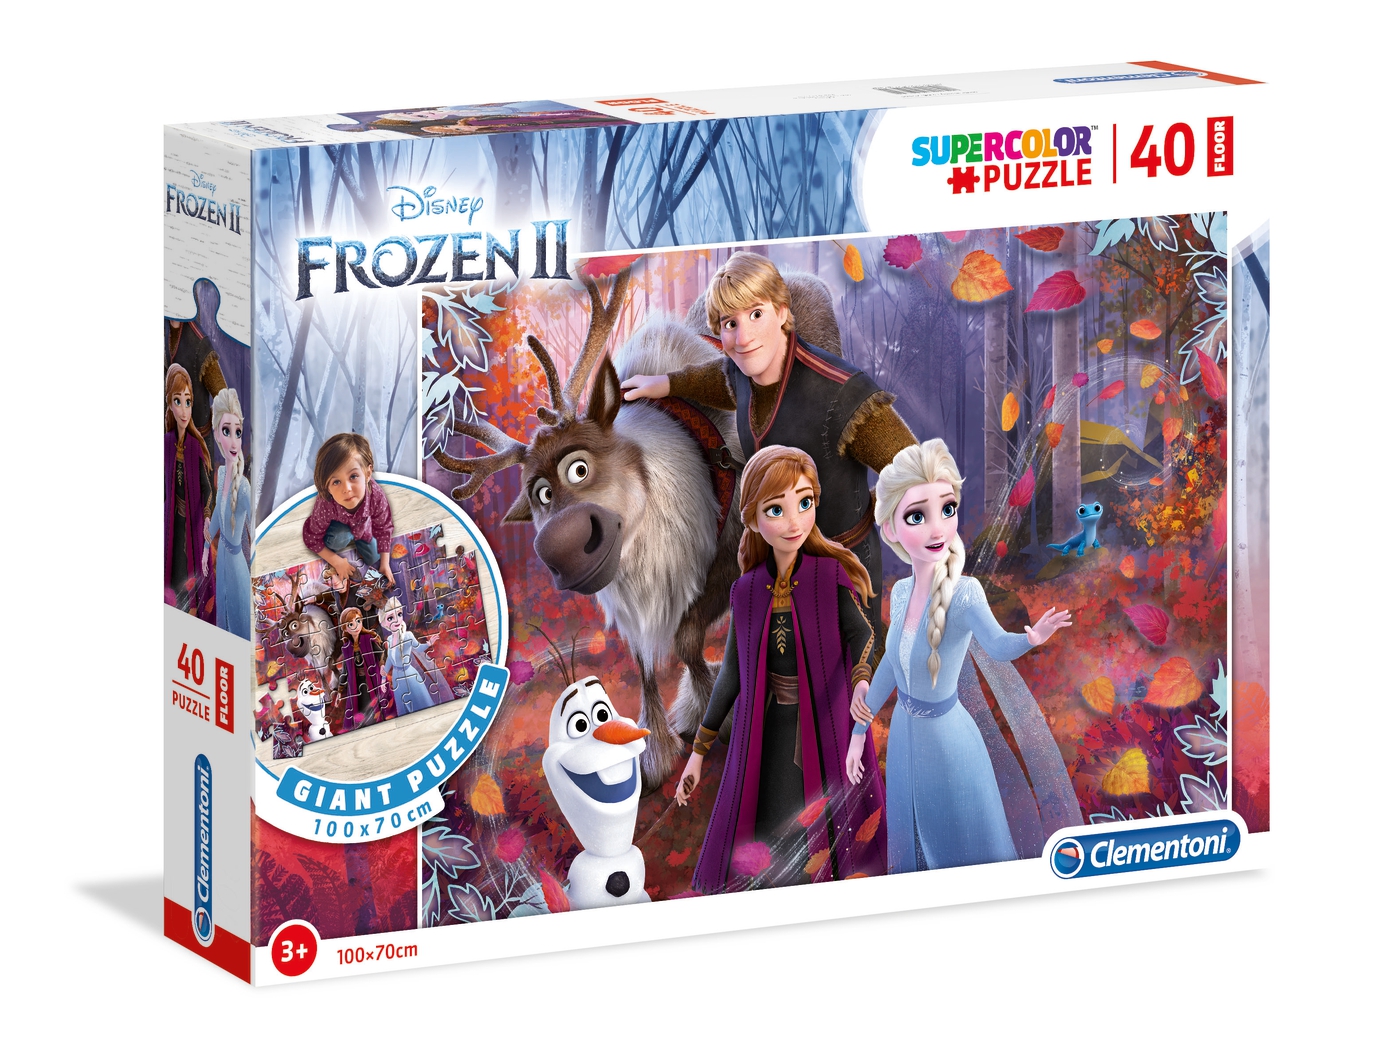 Echter kolonie plakband Disney Frozen 2 - 40 el. - Supercolor Puzzle - Clementoni